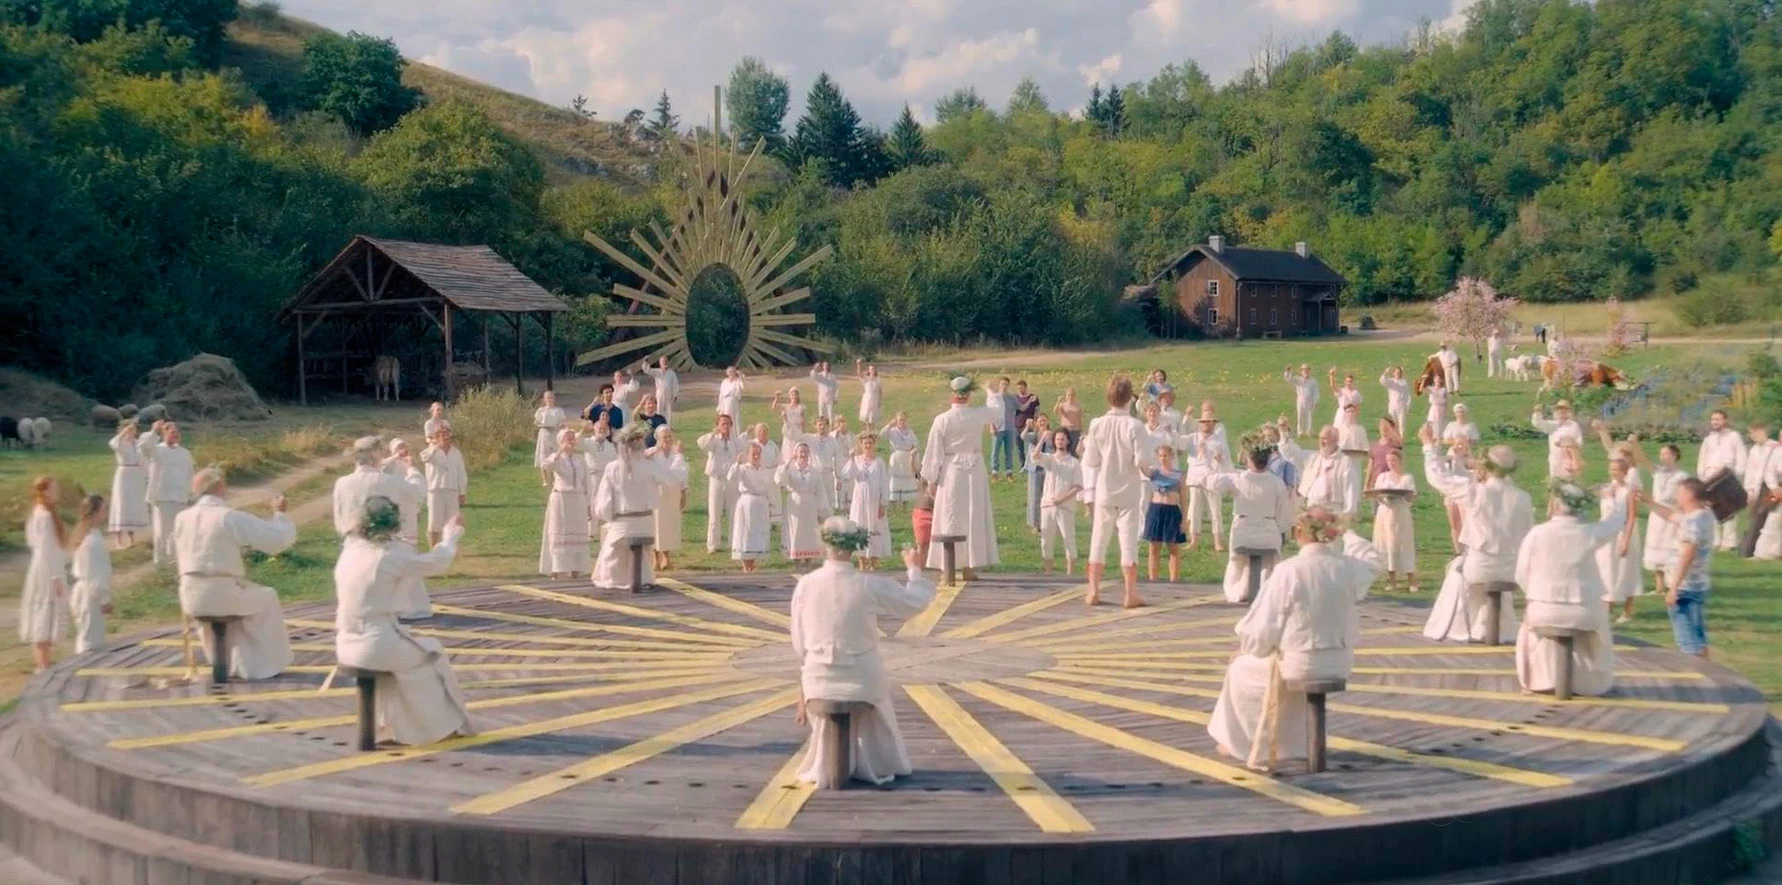 <p>В 2019-м вышел фильм &laquo;Солнцестояние&raquo;. По сюжету компания друзей приезжает в шведскую деревушку на празднование летнего солнцестояния, однако&nbsp;впоследствии попадает в руки&nbsp;языческого культа</p>

<p></p>

<p></p>